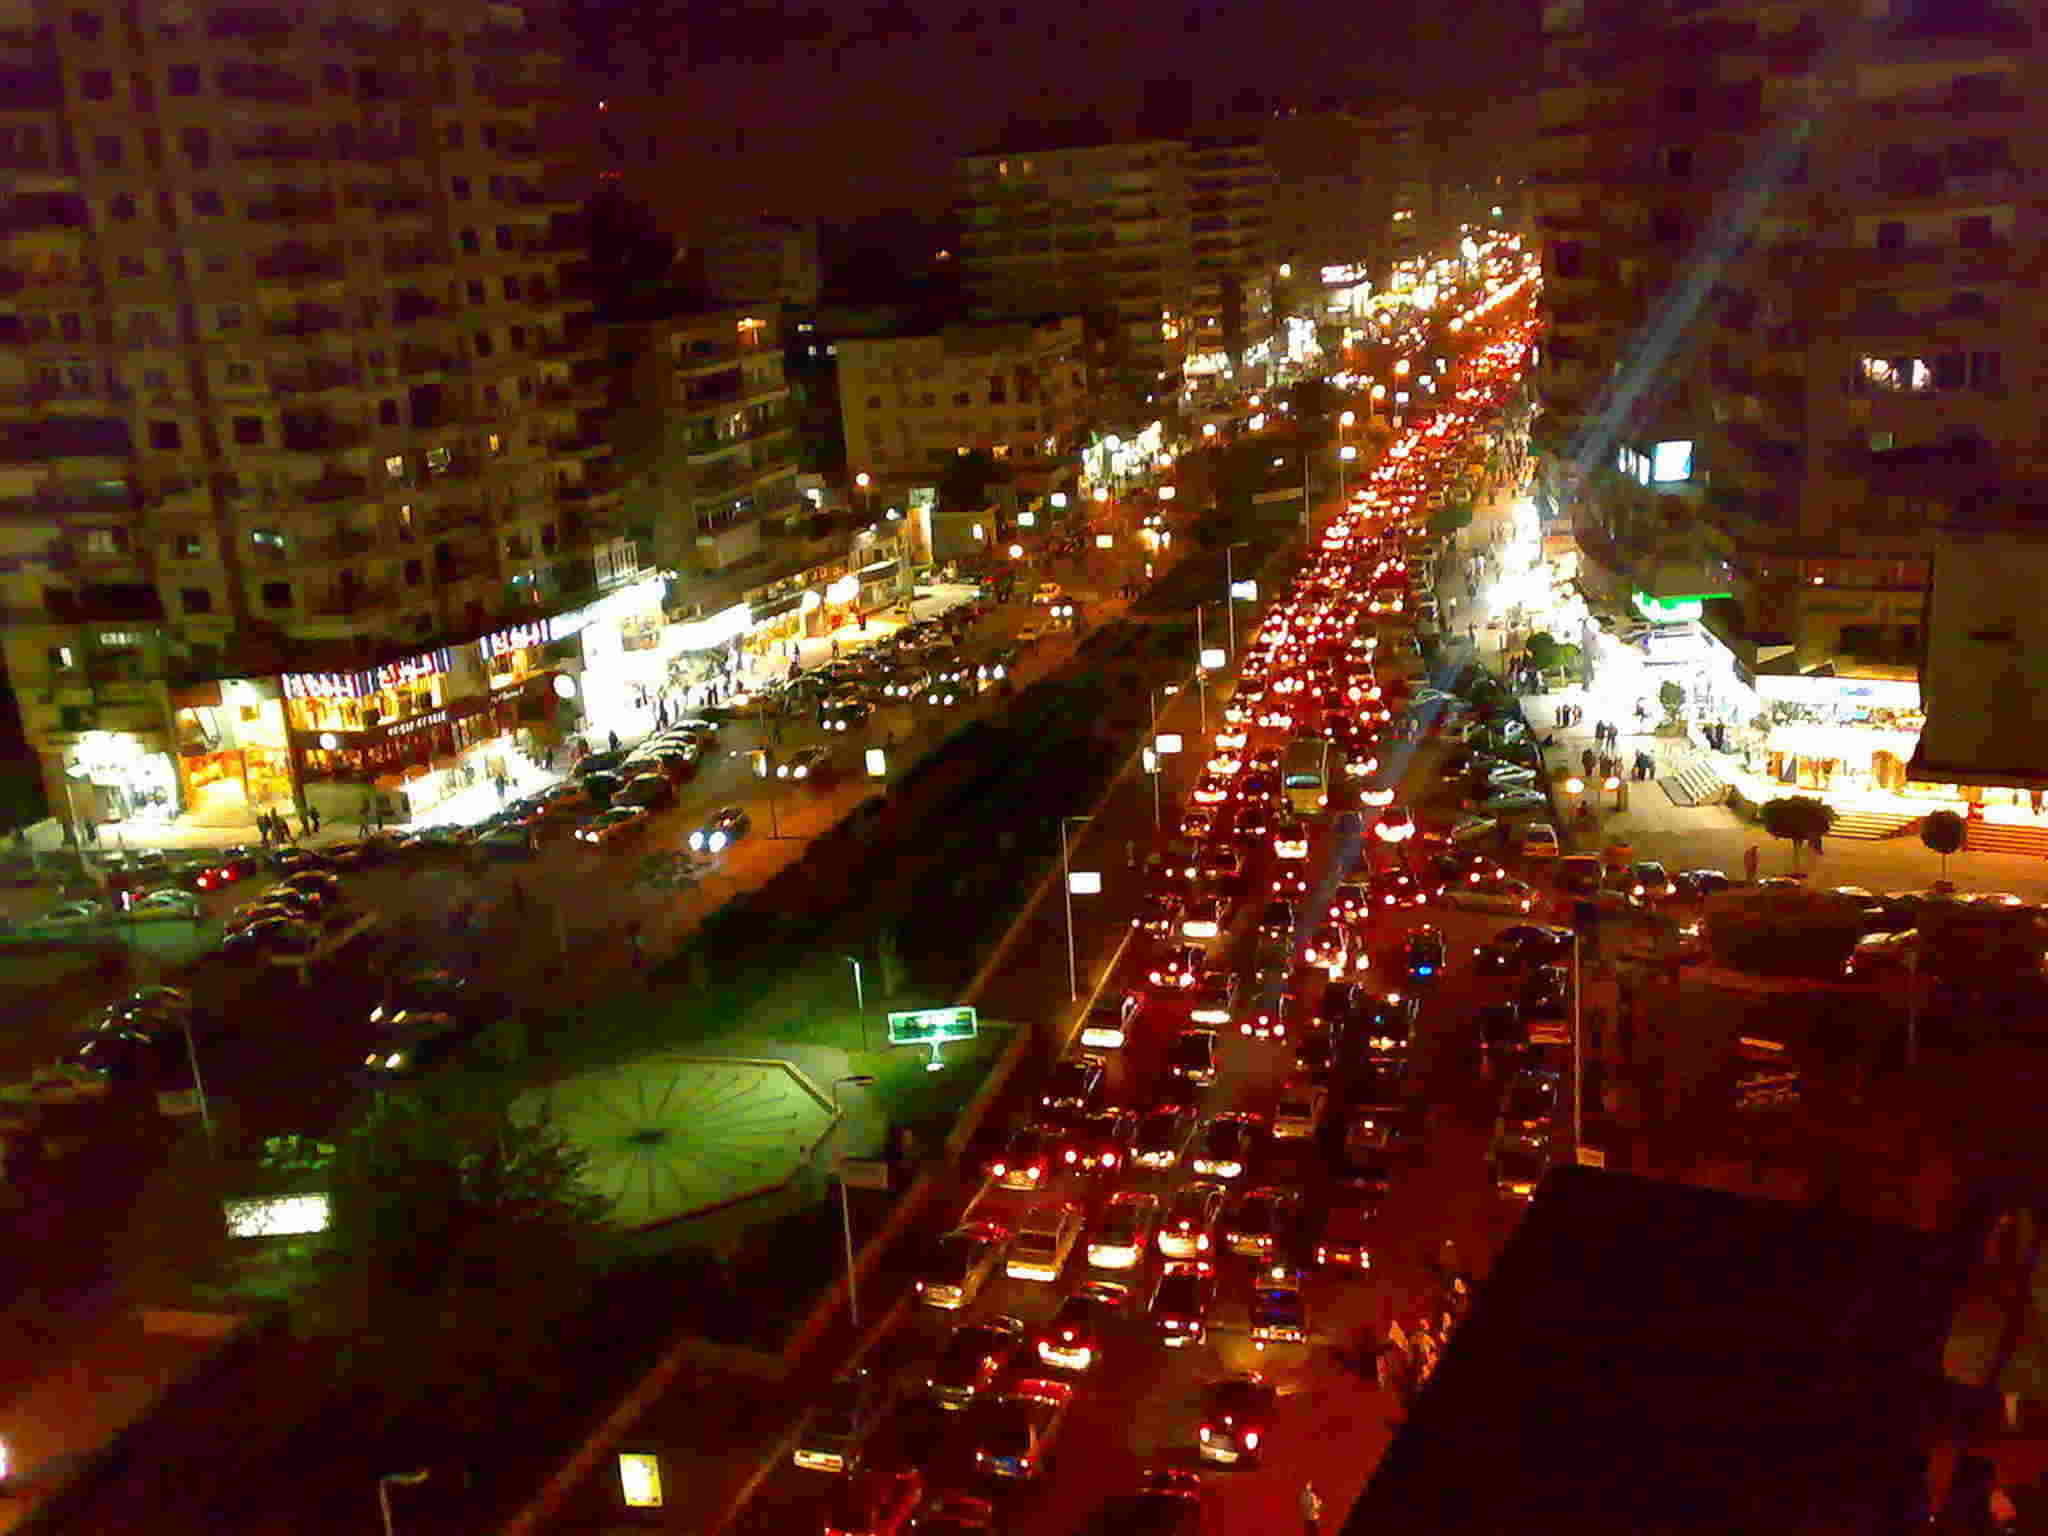 اشتر محلك في أهم المناطق التجارية بالقاهرة - شارع عباس العقاد